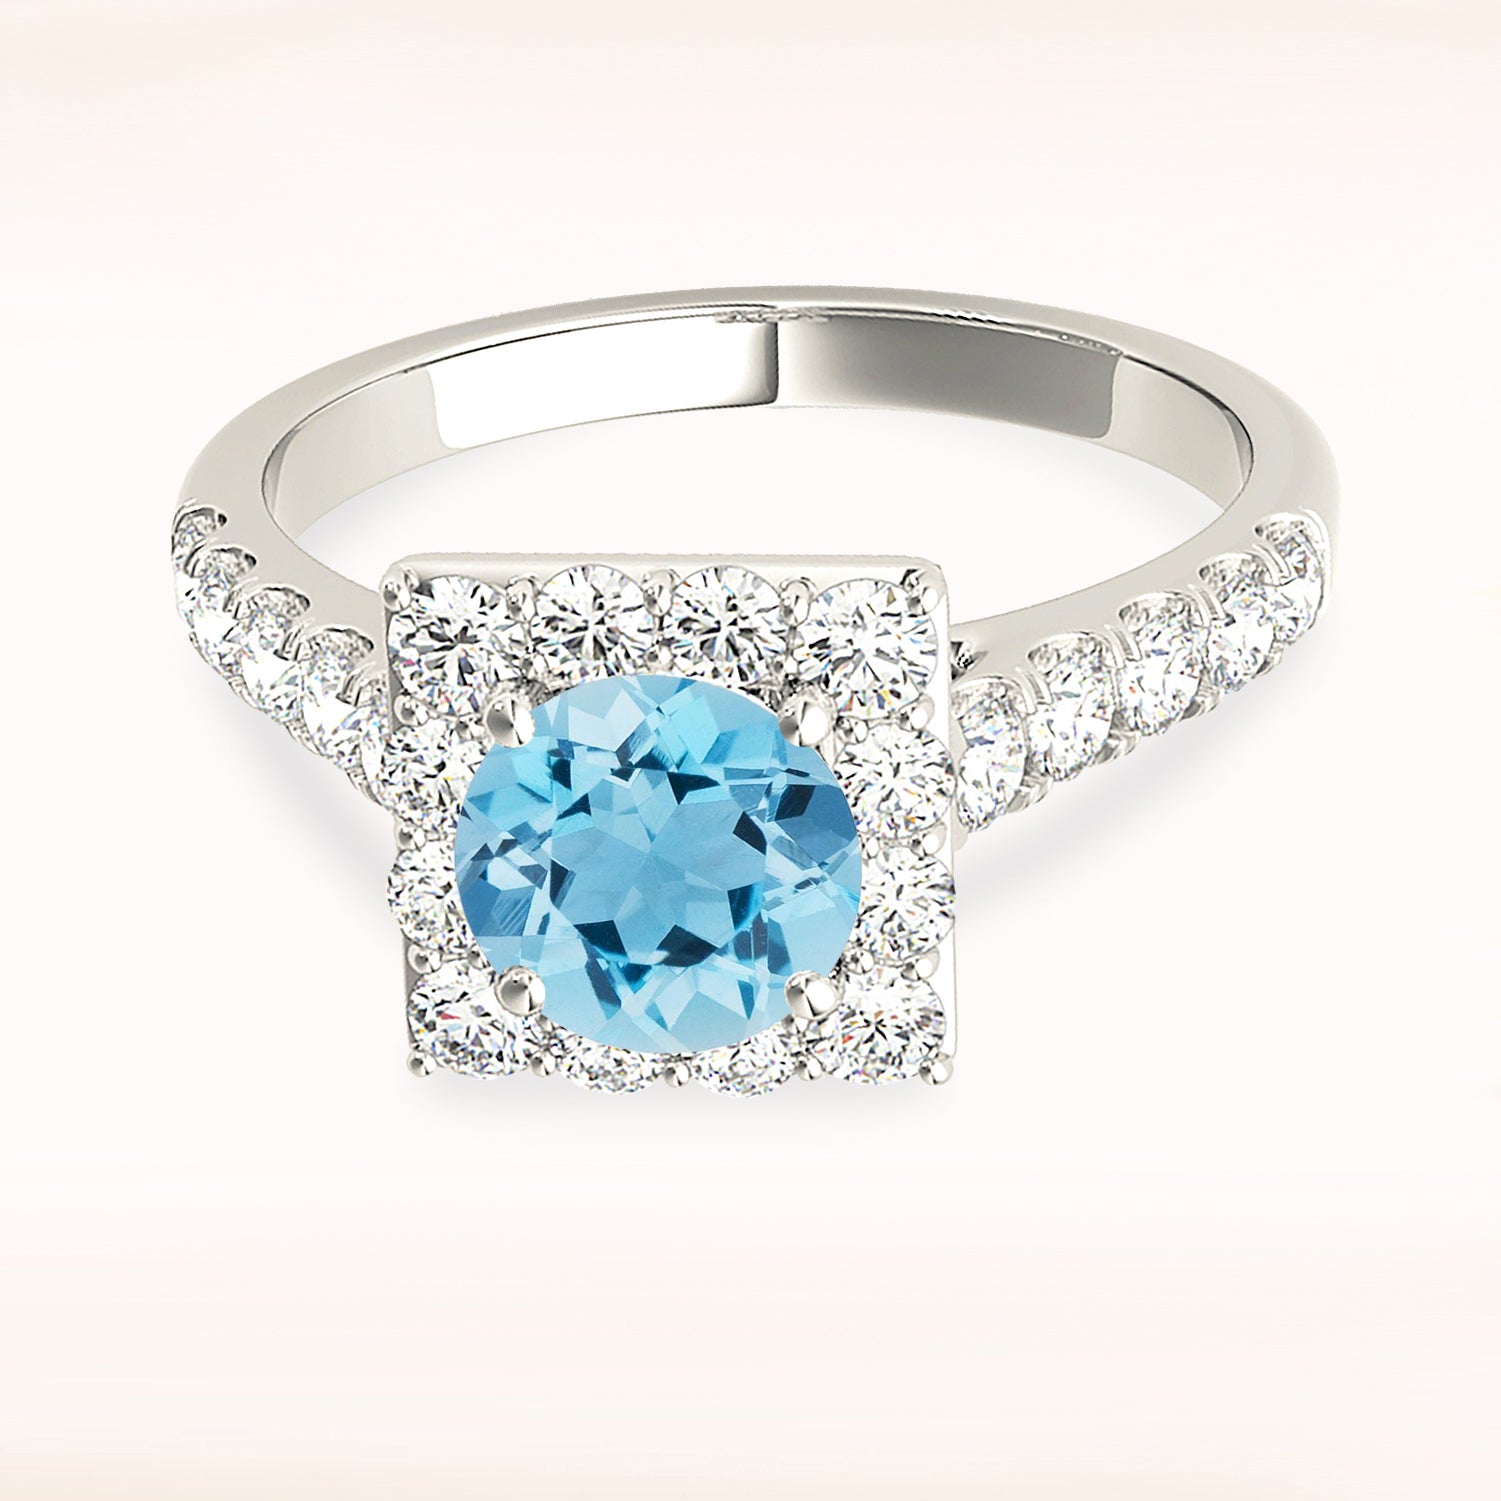 1.10 ct. Genuine Aquamarine Ring With 0.75 ctw. Diamond Square Halo And Diamond Band | Round Blue Aquamarine Halo Ring-in 14K/18K White, Yellow, Rose Gold and Platinum - Christmas Jewelry Gift -VIRABYANI